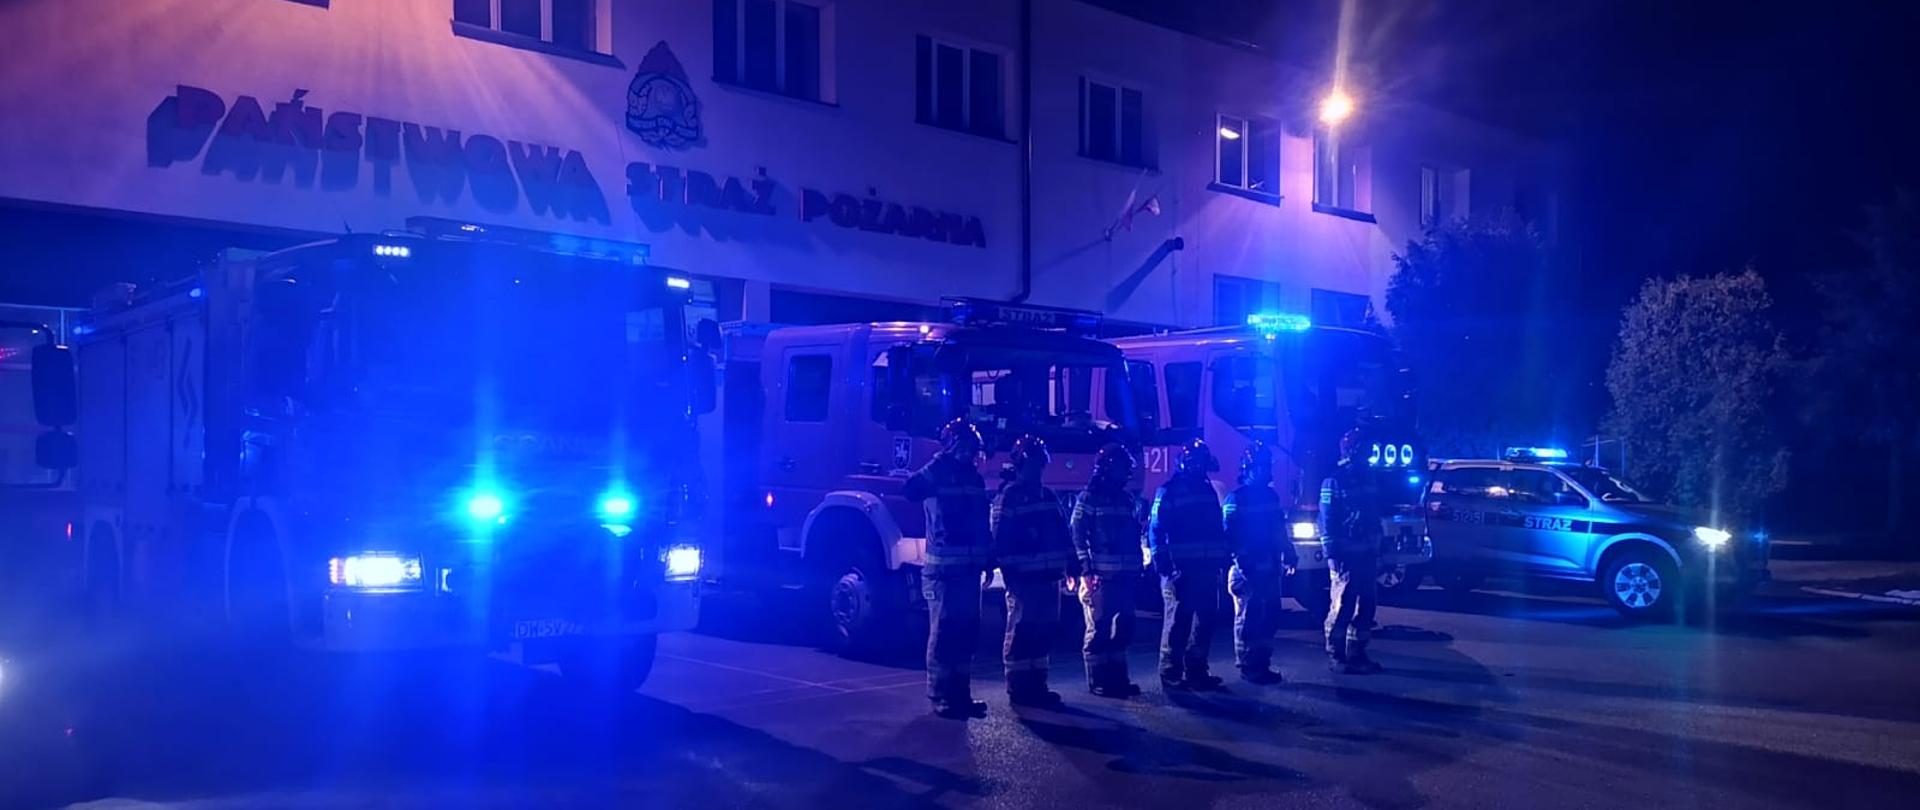 Strażacy oddają honory zmarłych druhom z Czernikowa. Na zdjęciu w porze nocnej dobre widoczne niebieskie sygnały alarmowe